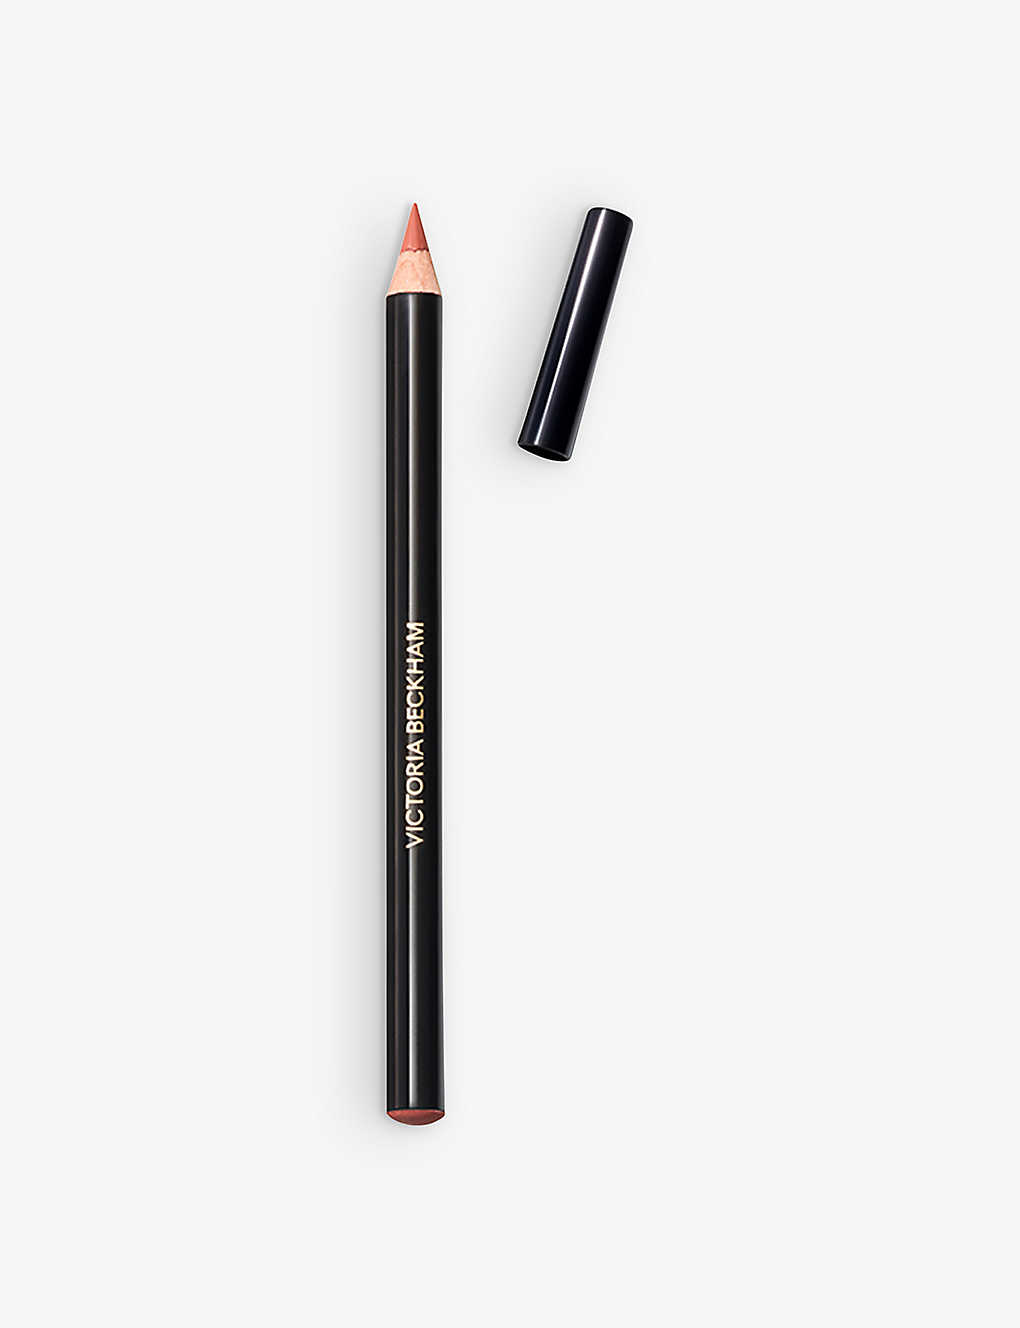 Victoria Beckham Beauty 1 Lip Definer Lip Pencil 1.1g